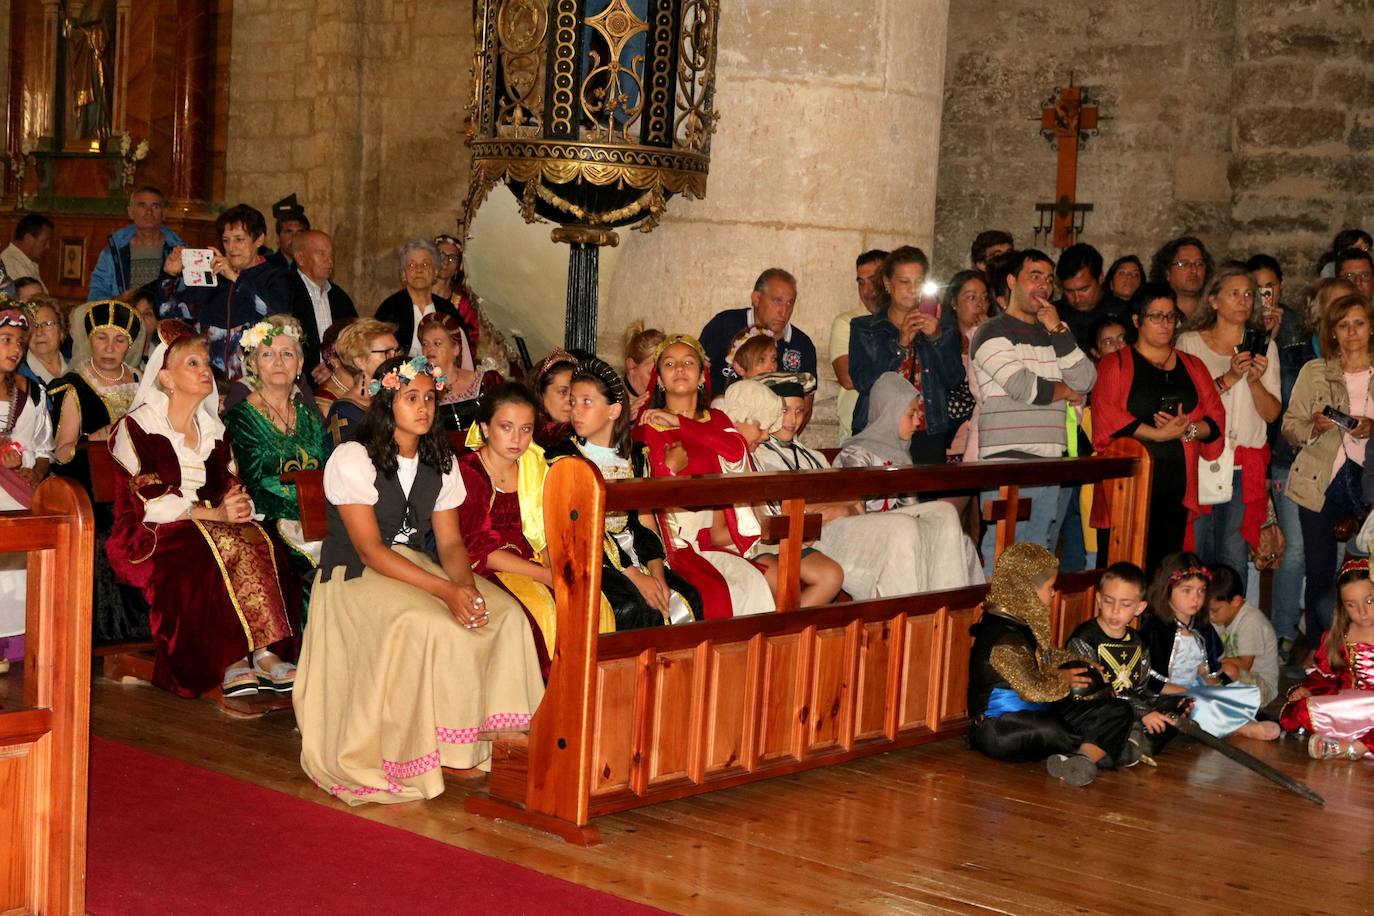 Fotos: Escenificación del Cortejo Fúnebre de la Reina Juana I de Castilla en Torquemada